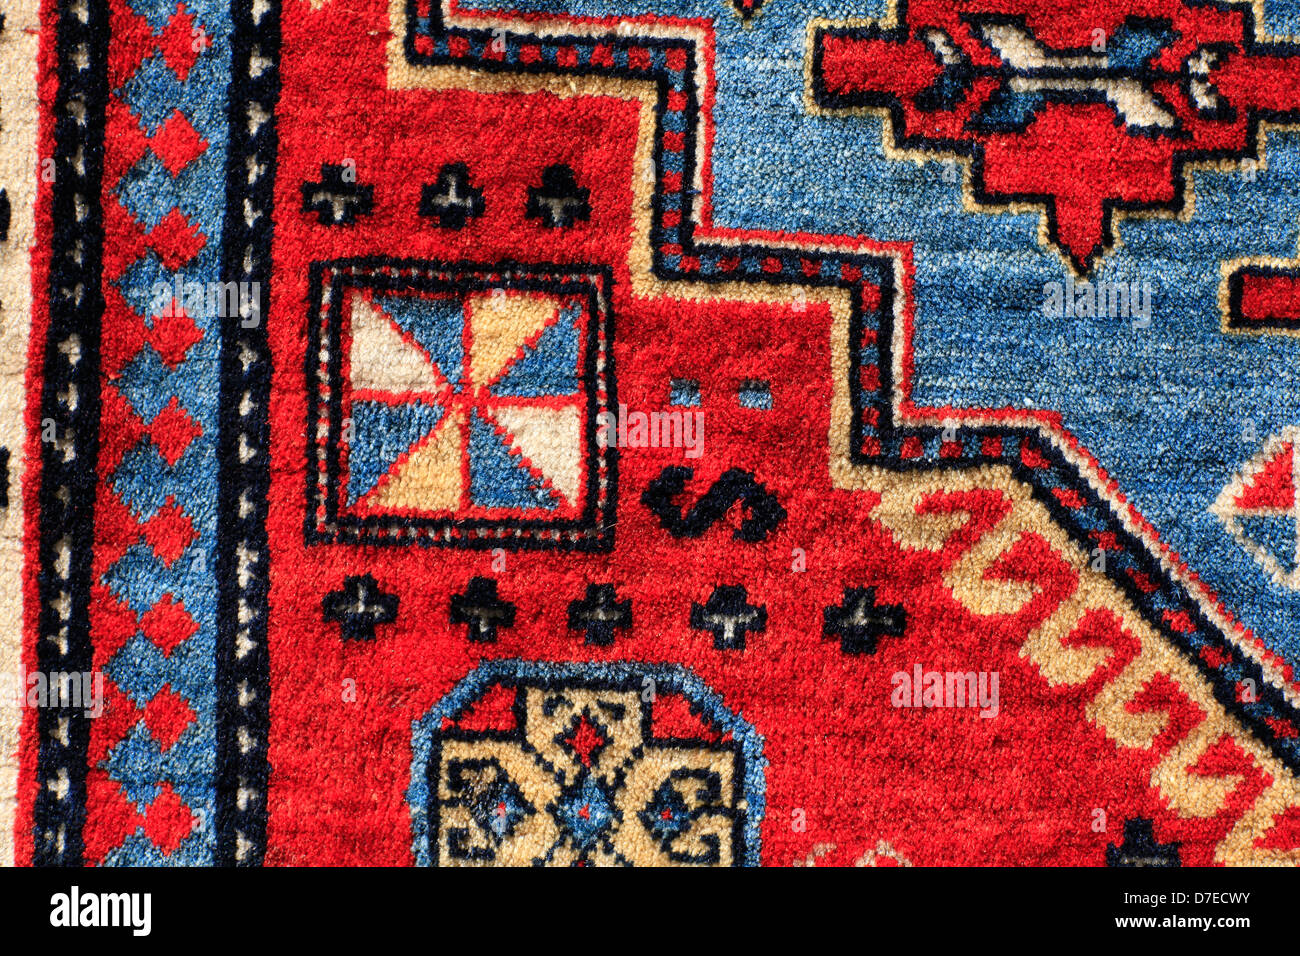 Tappeto armeno immagini e fotografie stock ad alta risoluzione - Alamy